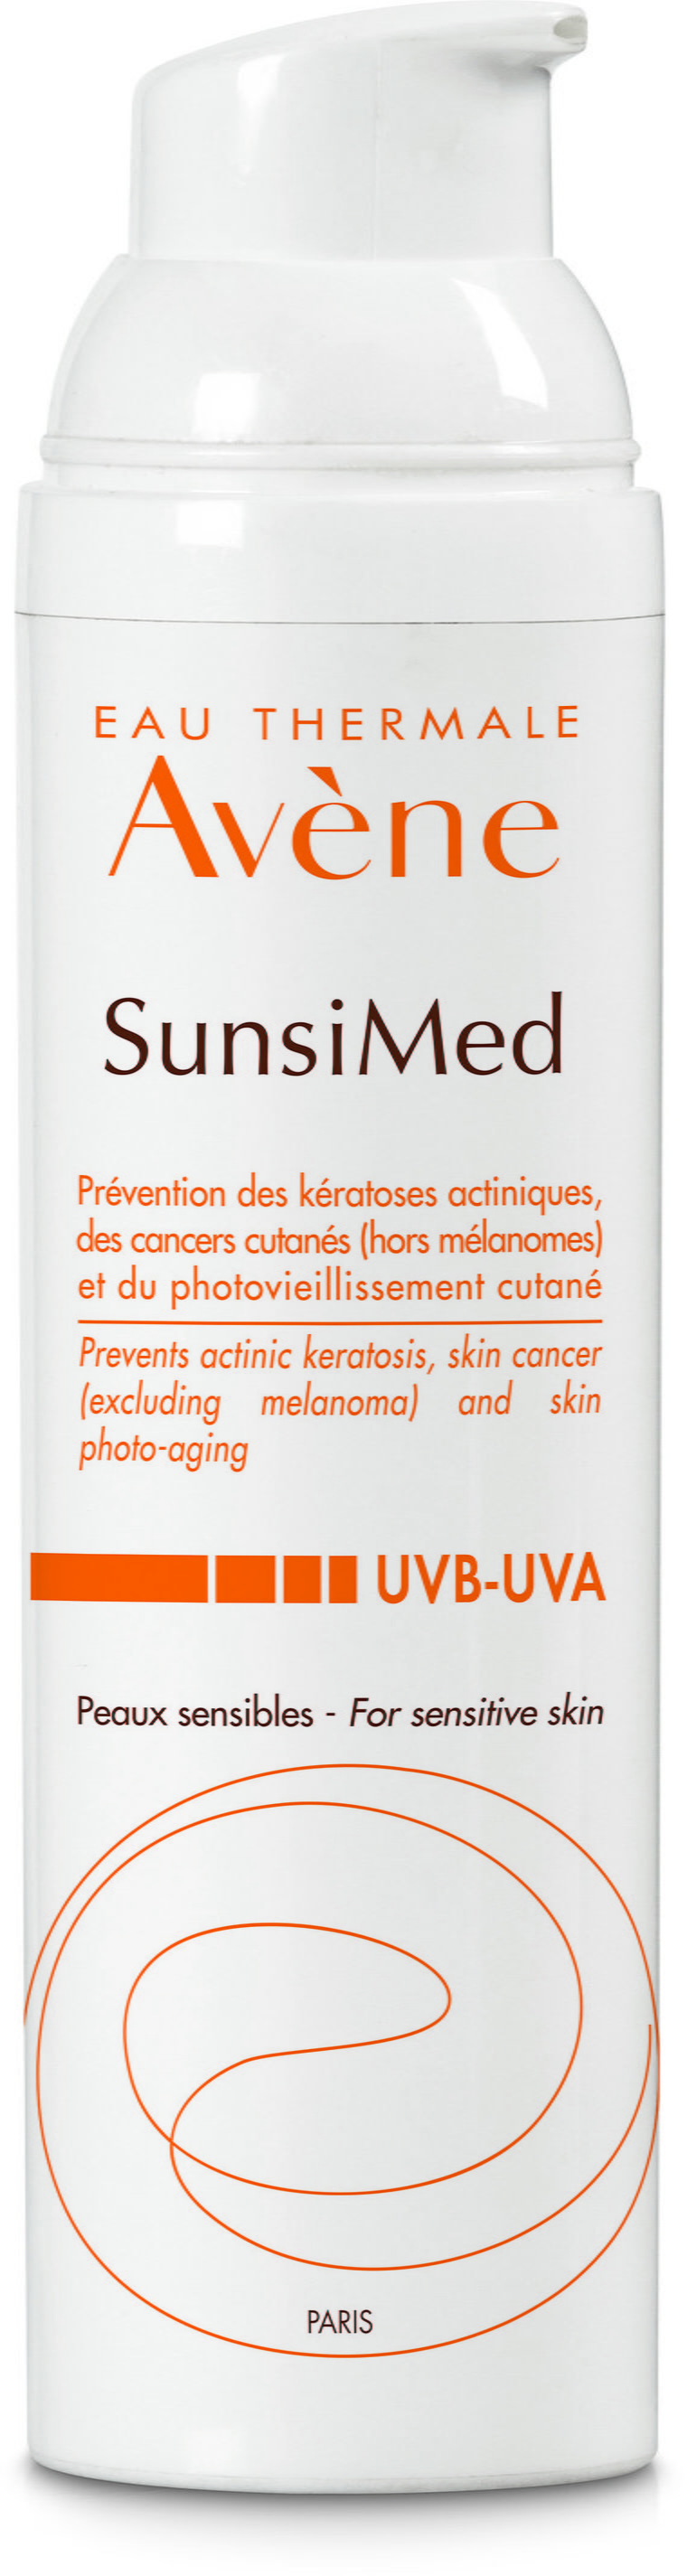 Krem przeciwsłonieczny Avene Sunsimed Sun Care SPF50+ 80 ml (3282770100778). Kosmetyki do ochrony przeciwsłonecznej